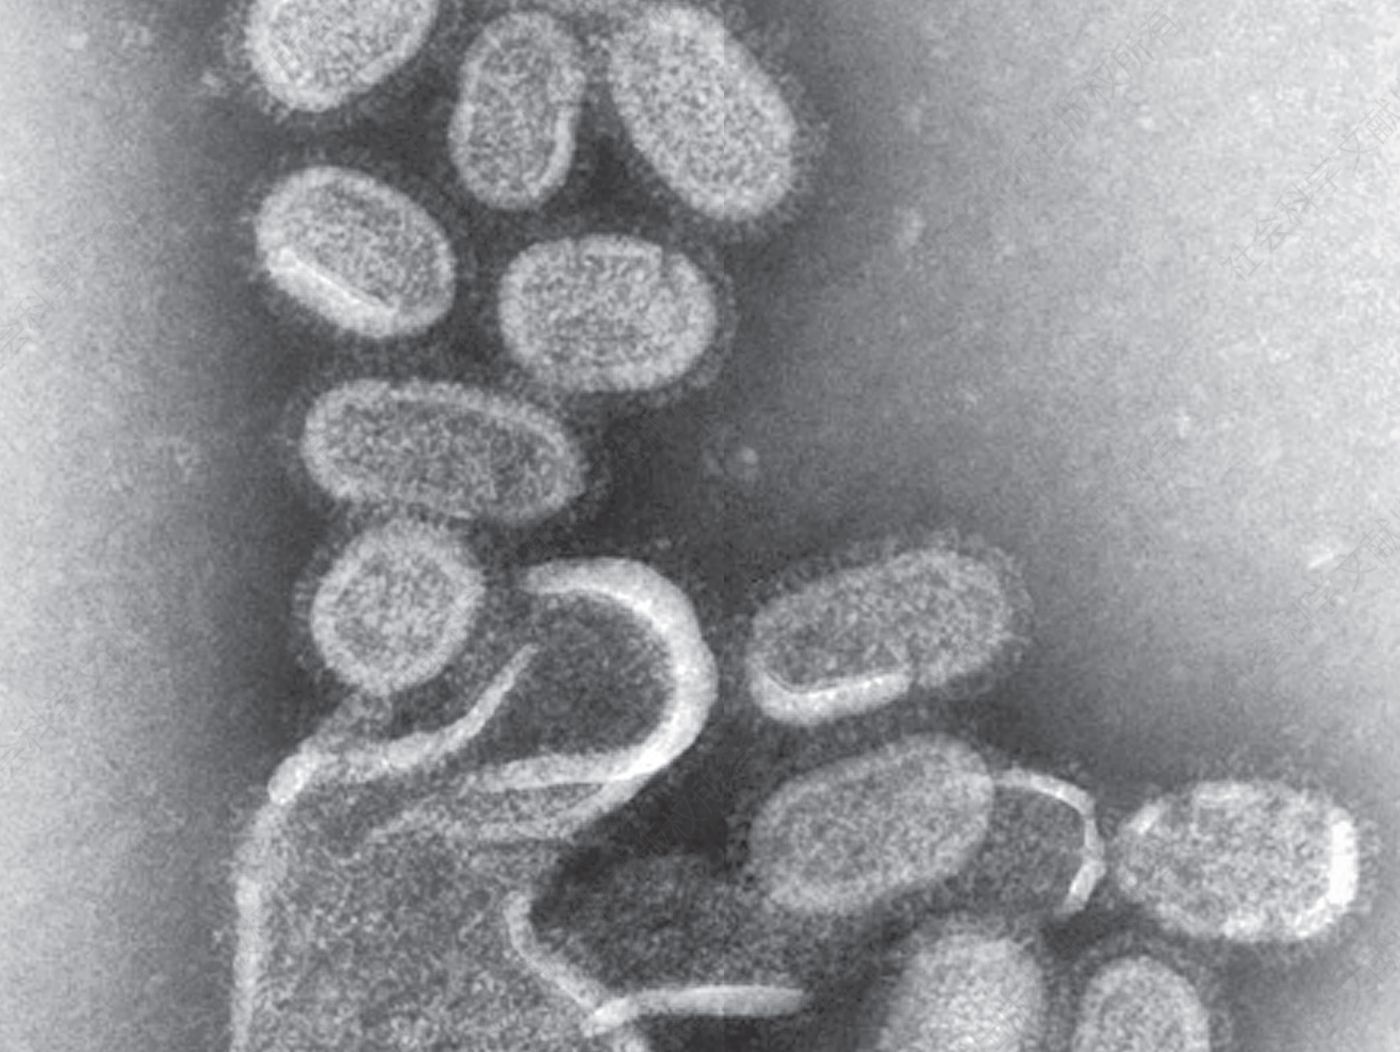 再造的1918年流感病毒的电子显微照片。